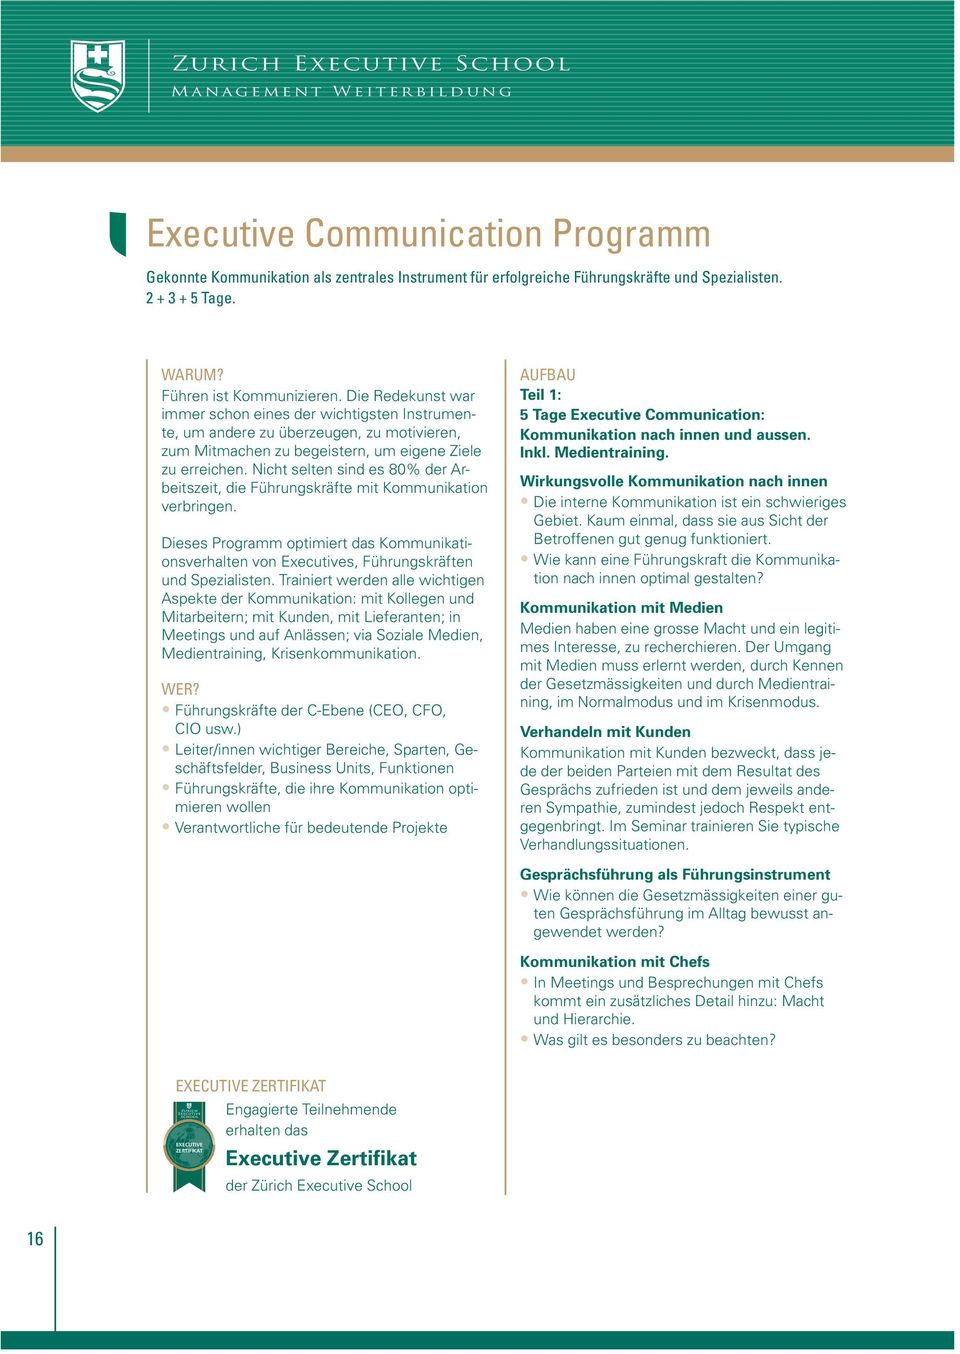 Nicht selten sind es 80% der Arbeitszeit, die Führungskräfte mit Kommunikation verbringen. Dieses Programm optimiert das Kommunikationsverhalten von Executives, Führungskräften und Spezialisten.